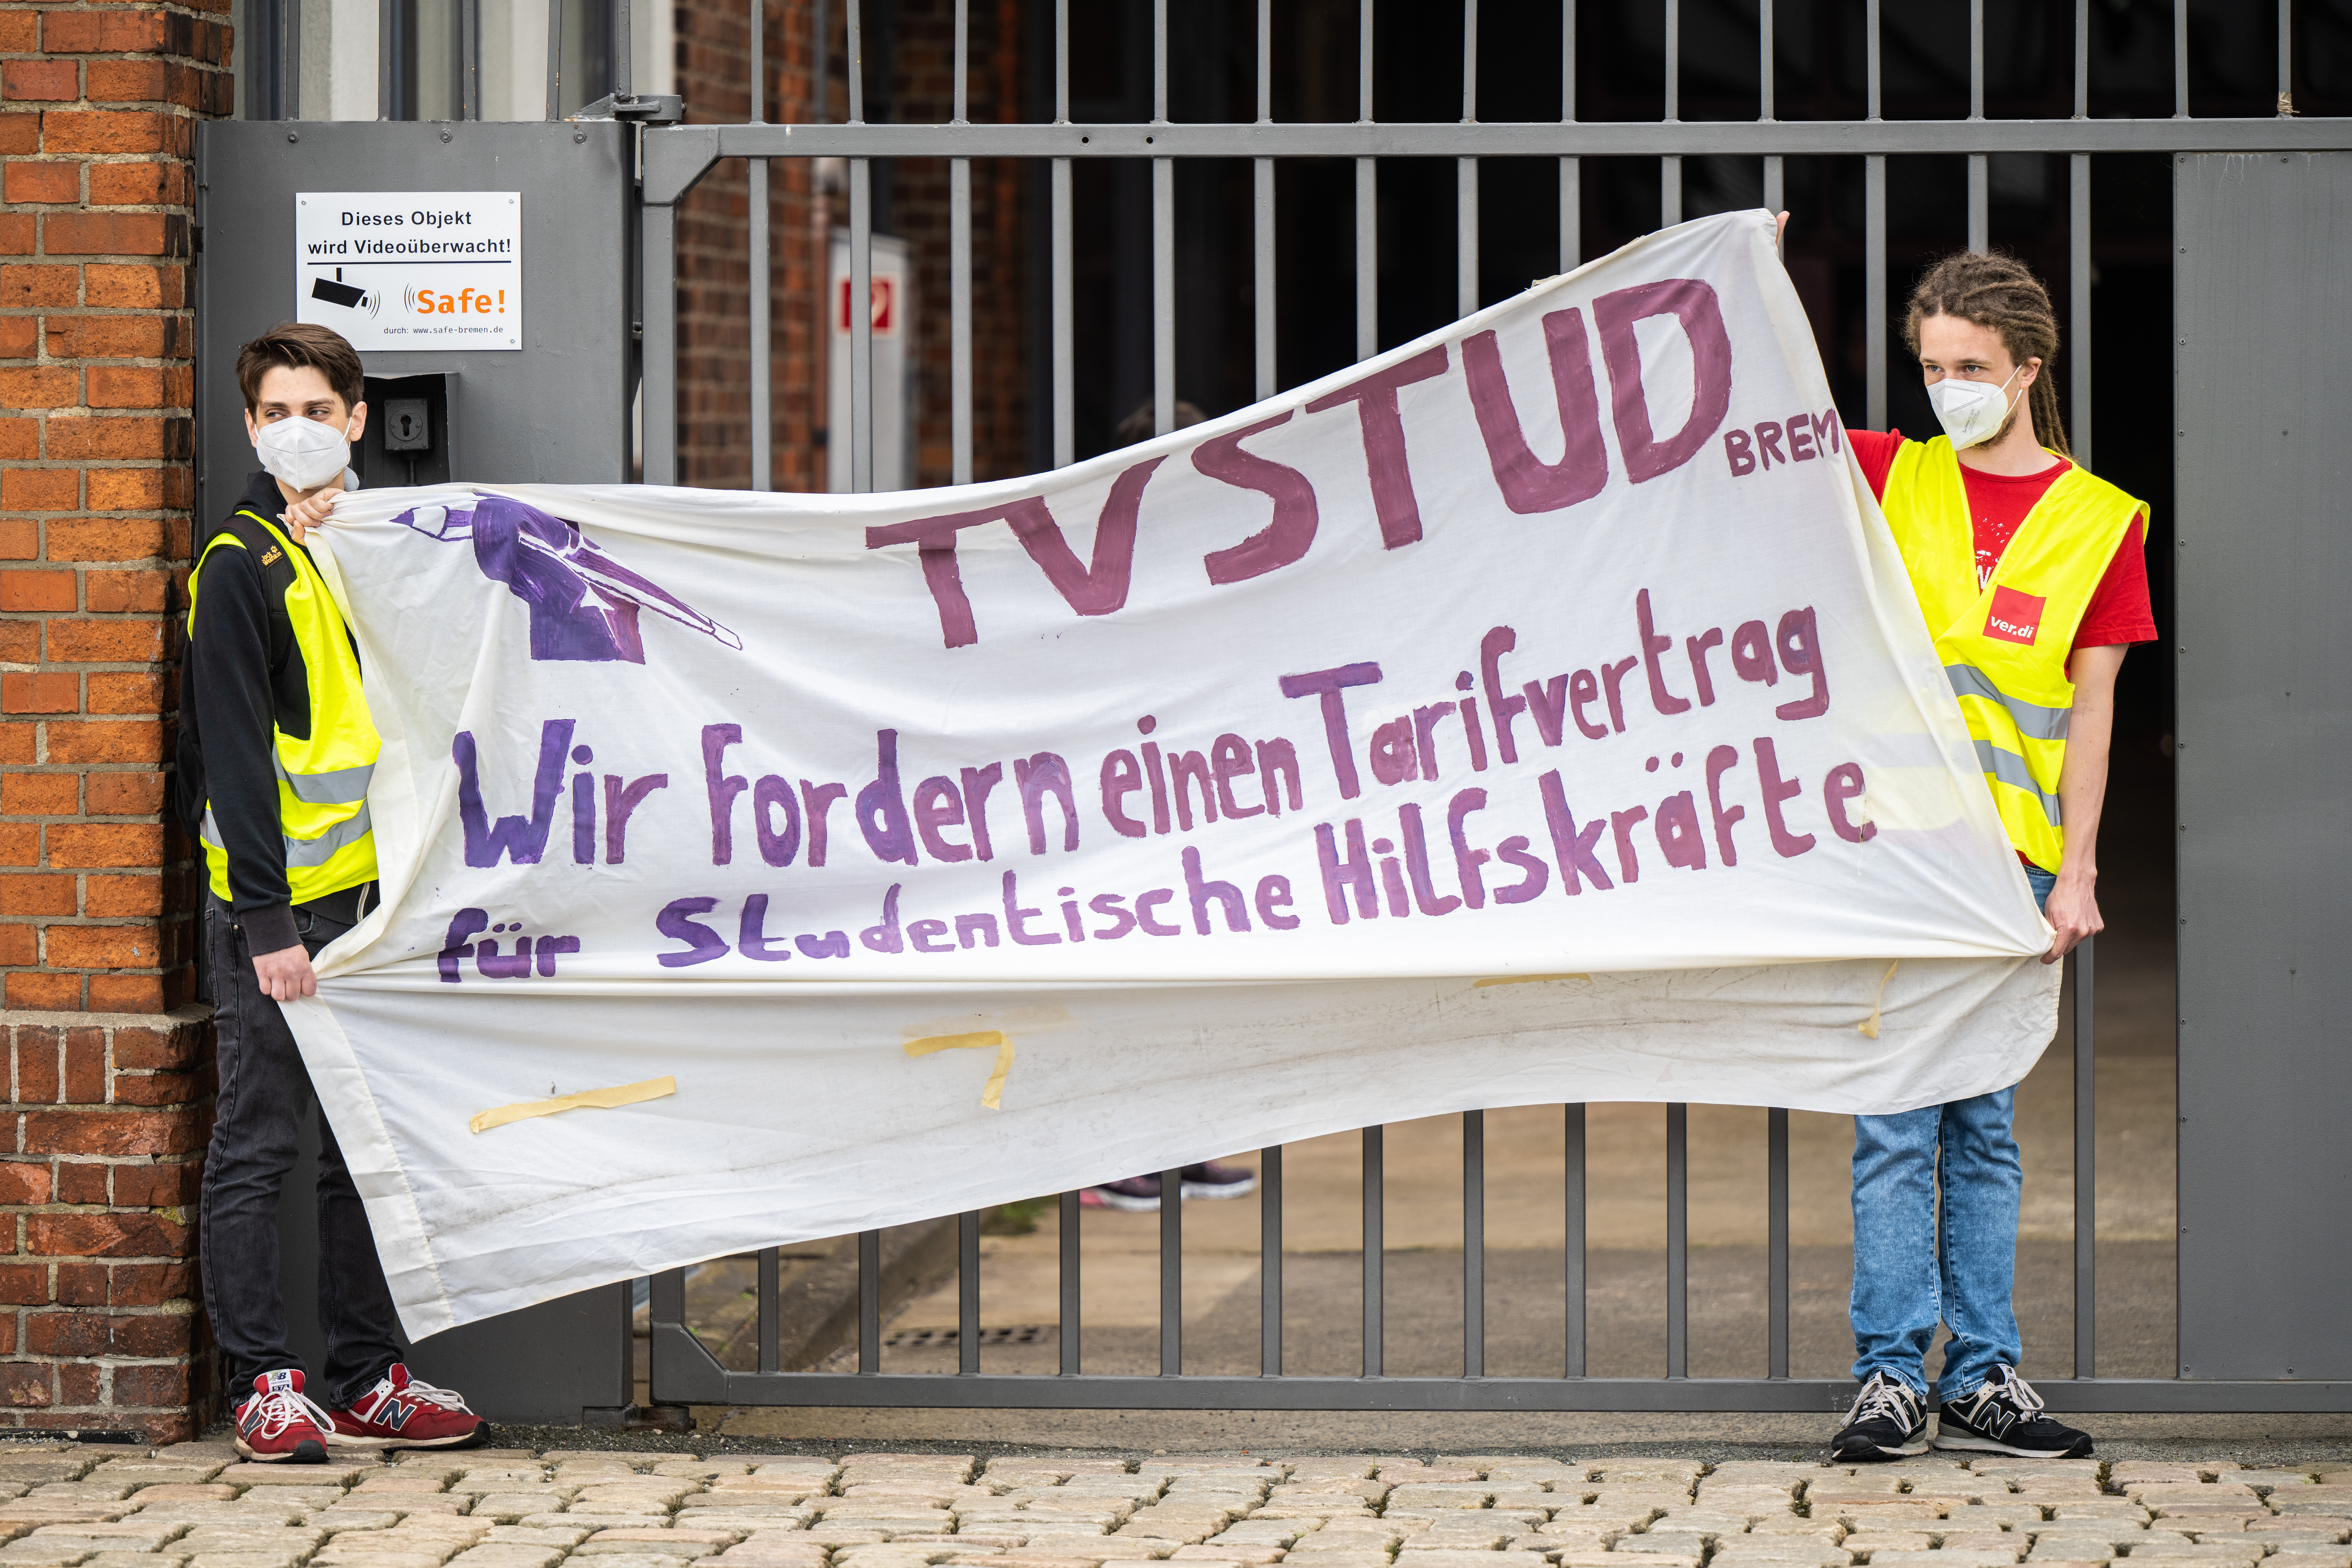 Wie in Bremen, fordert die Initiative „TVStud“ in Hamburg Tarifverträge für studentische Beschäftigte, für das jetzt ein Forderungspapier vorgelegt wurde. (Archivbild)